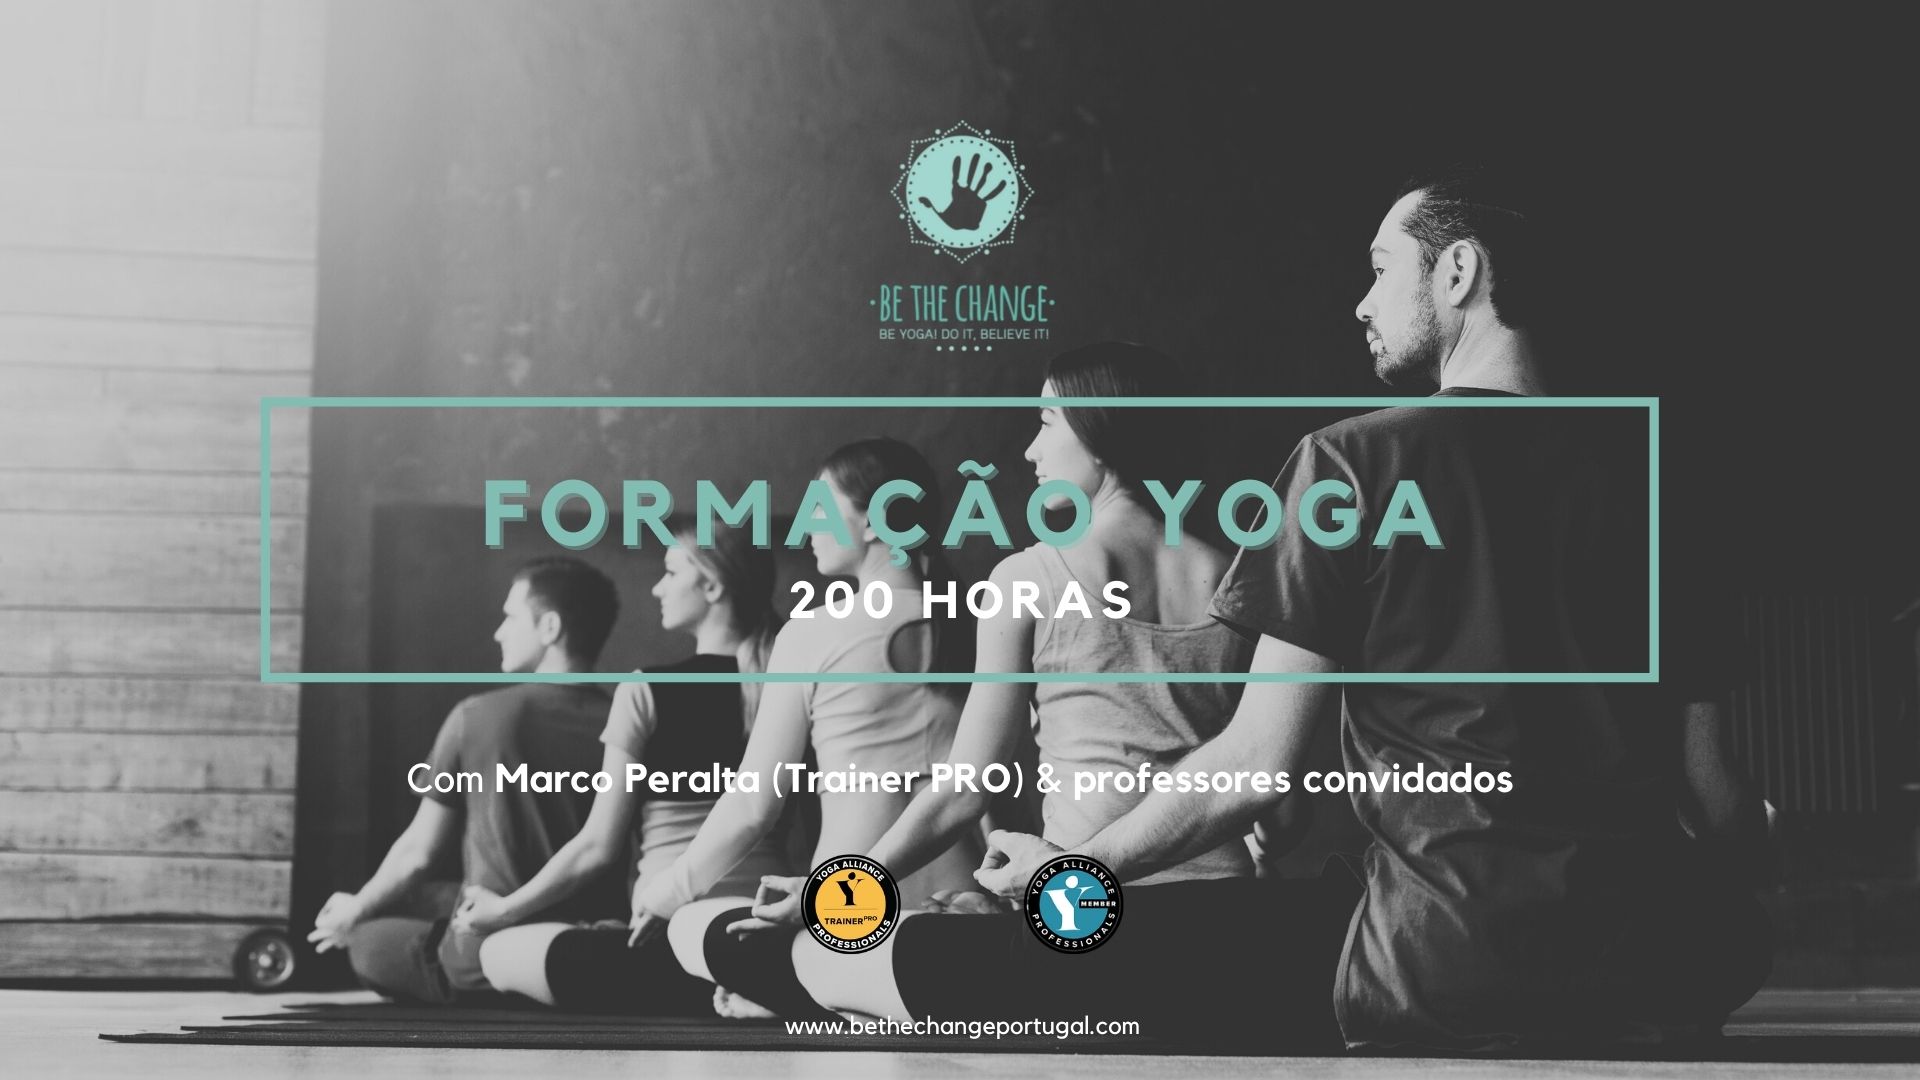 Curso de Formação Yoga 200H / Com Marco Peralta e Certificação Internacional YAP